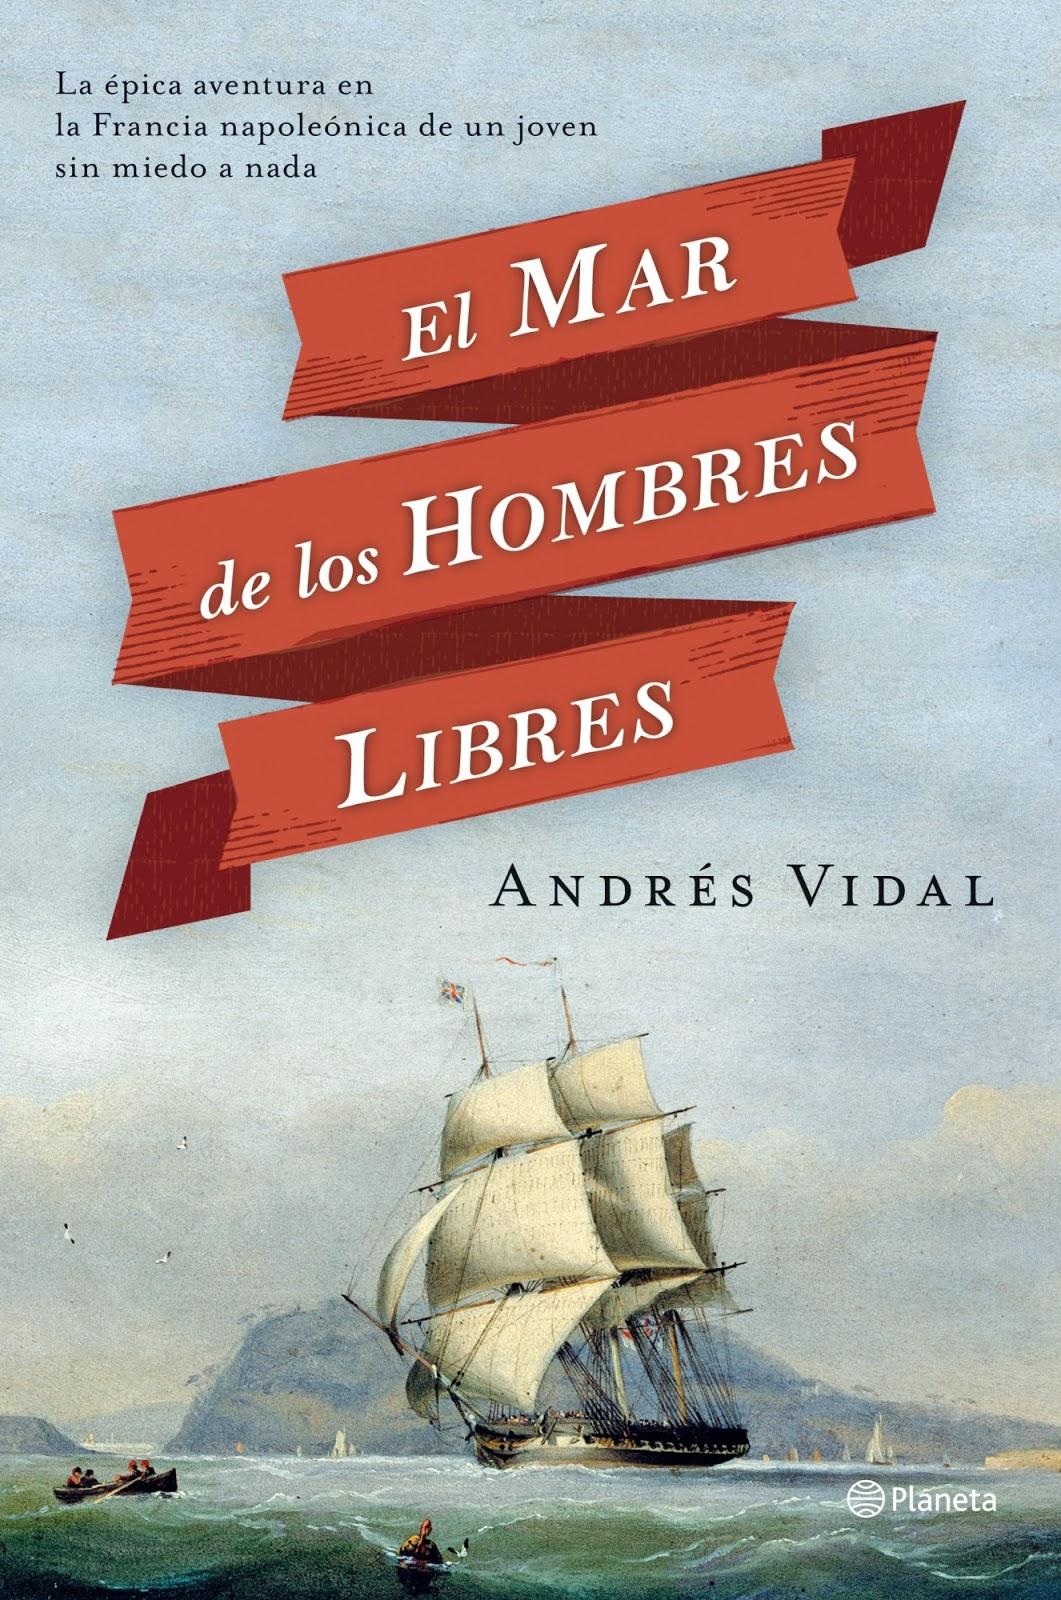 El mar de los hombres libres de Andrés Vidal